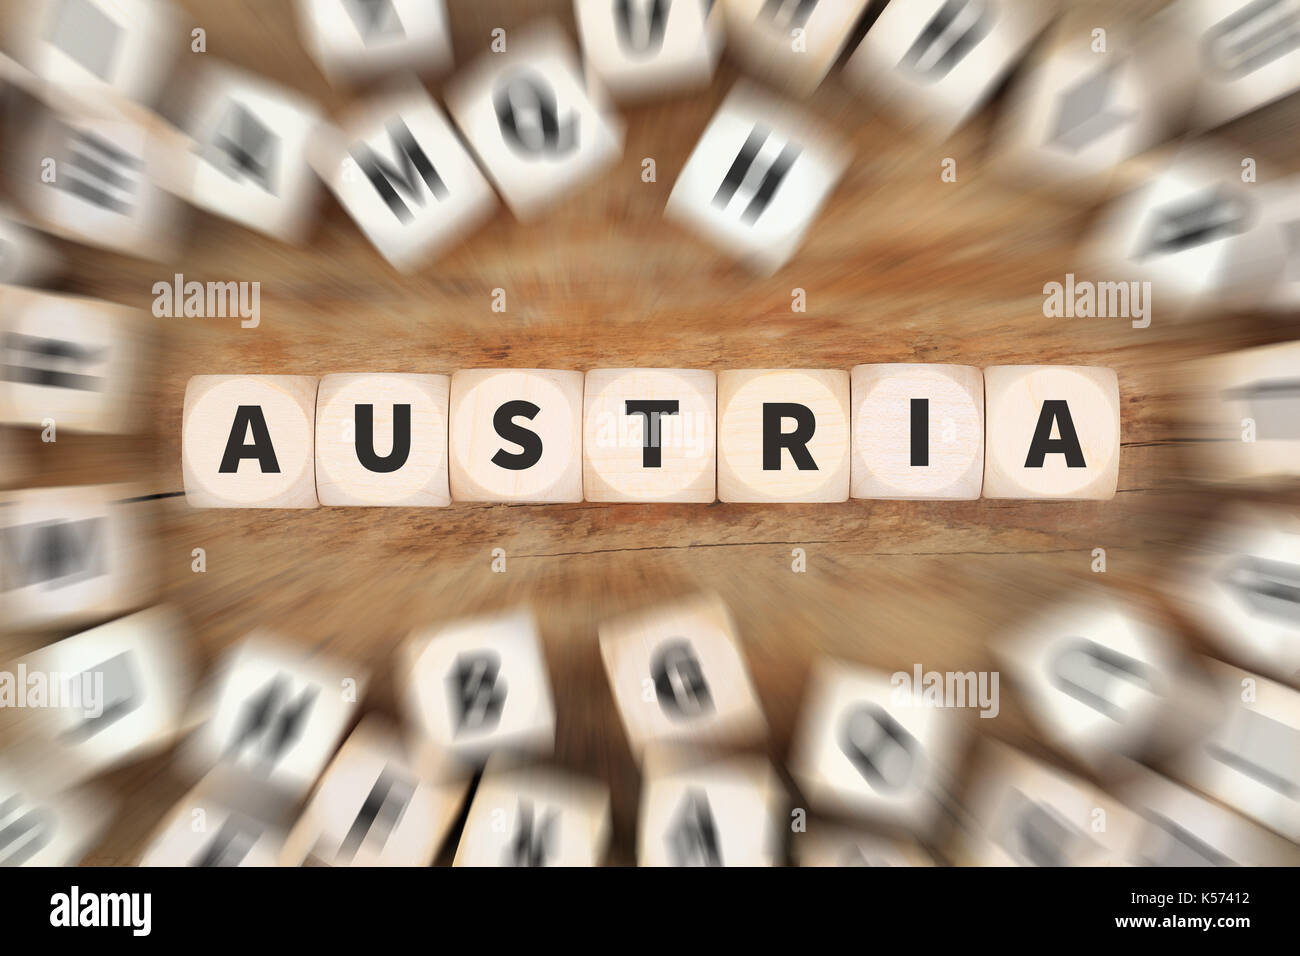 Österreich Land reisen Reisen Würfel Business Konzept Idee Stockfoto